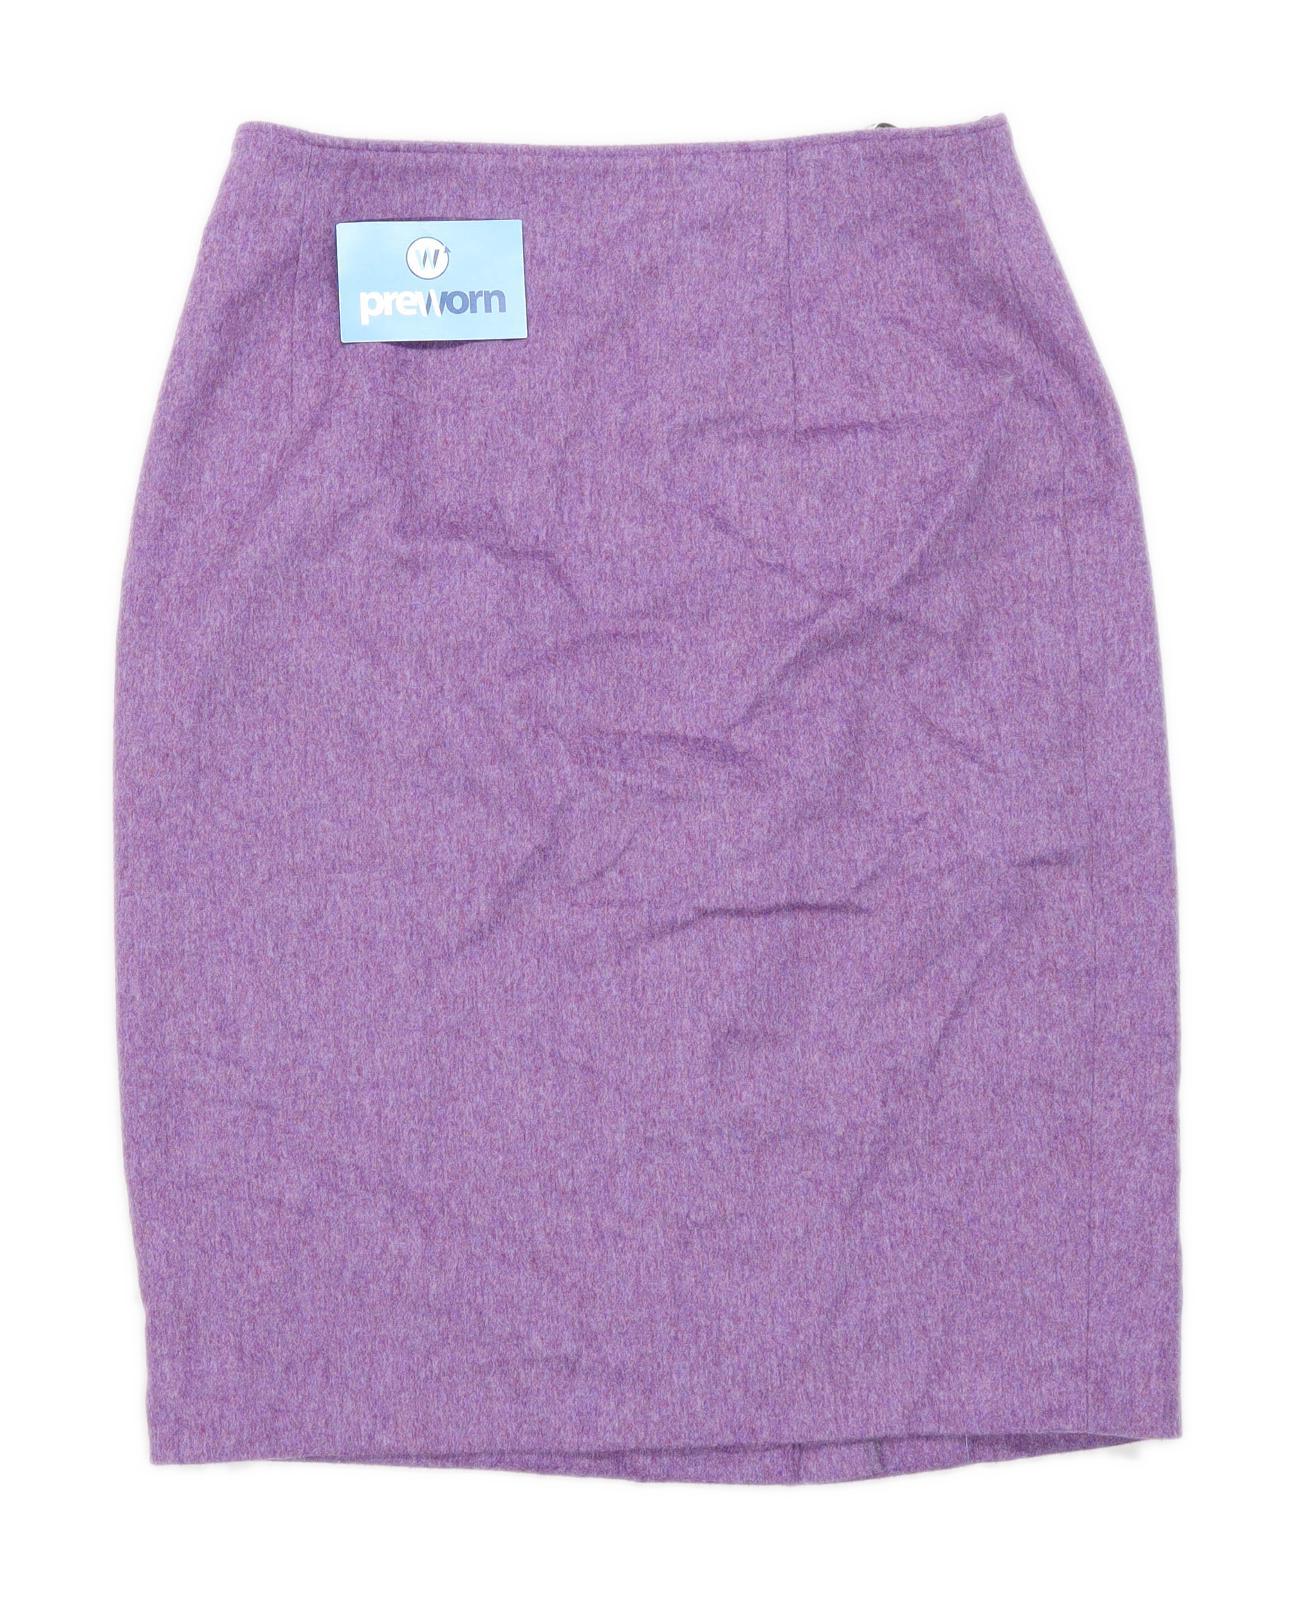 Hammer Womens Size 12 Wool Blend Purple Skirt (Regular)